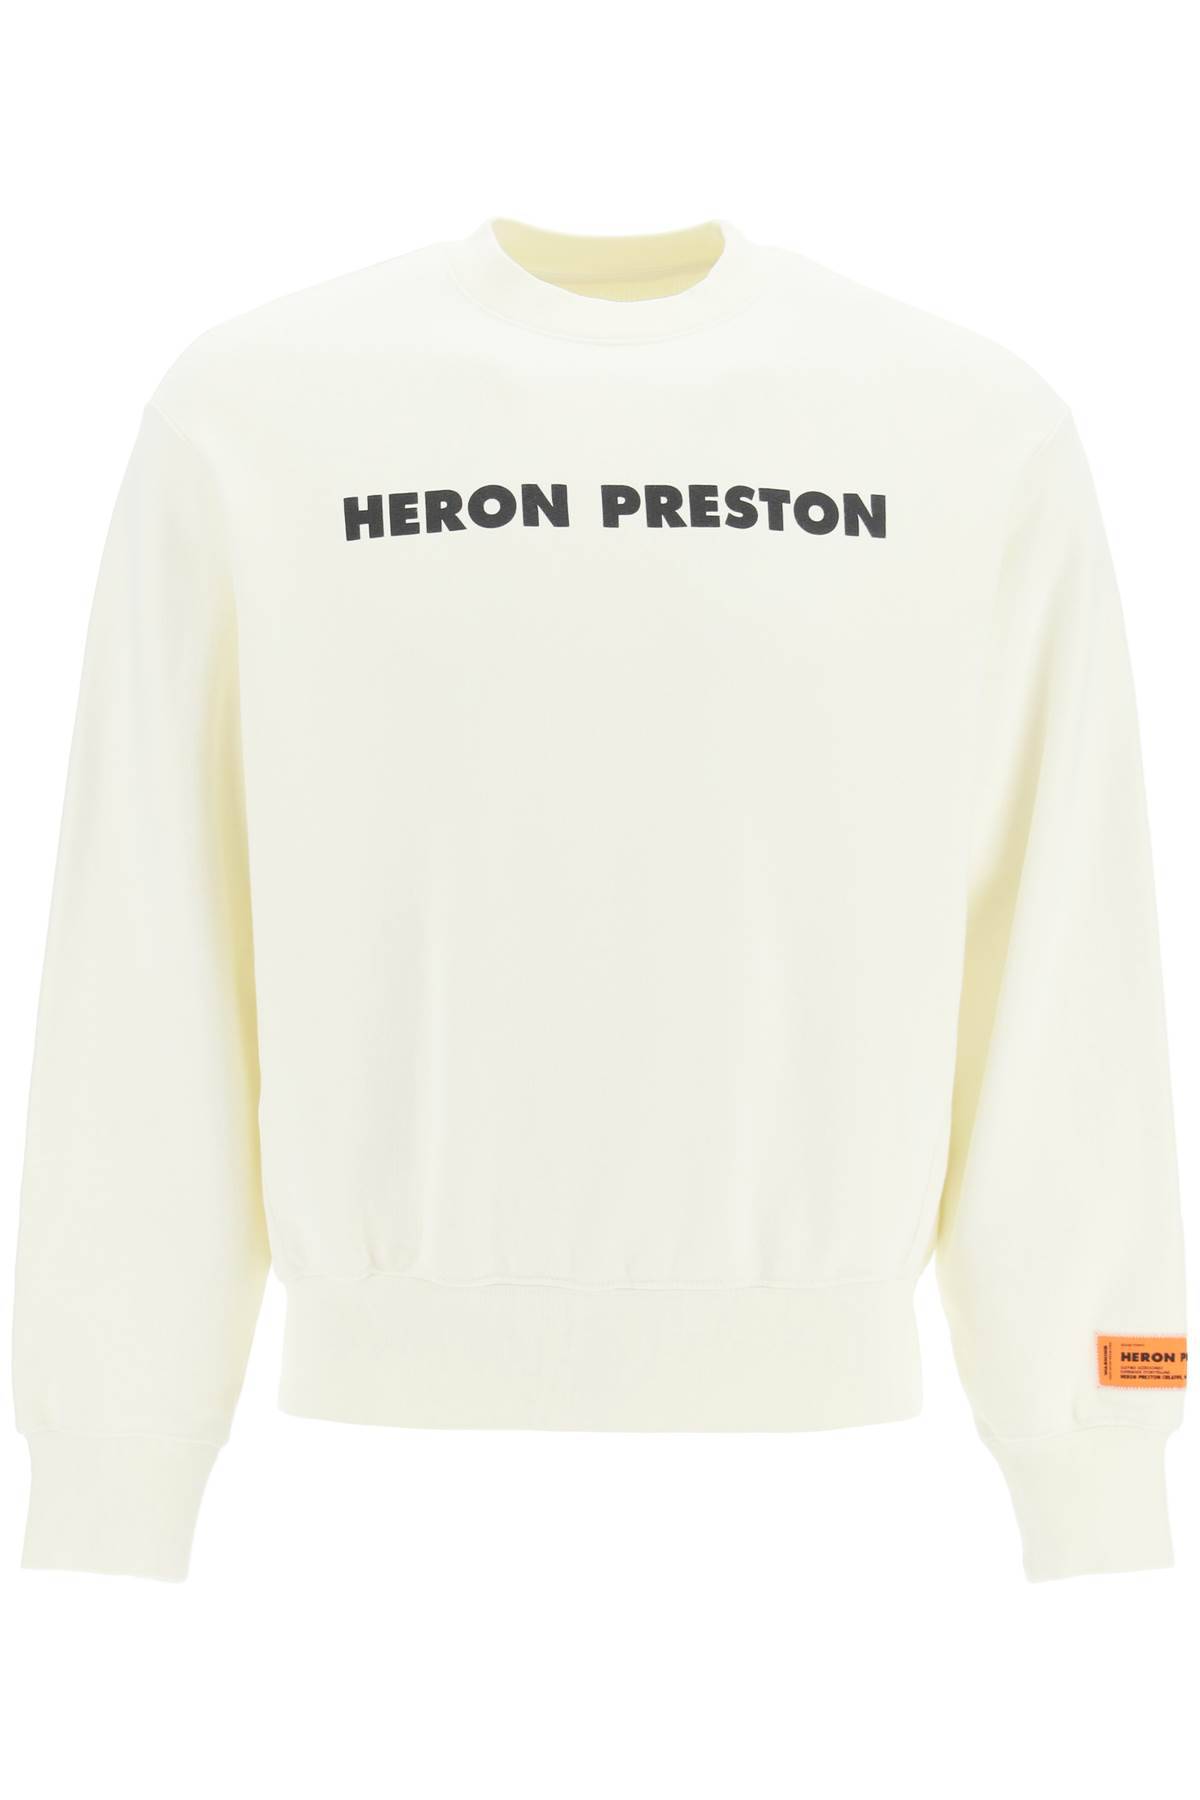 HERON PRESTON HERON PRESTON